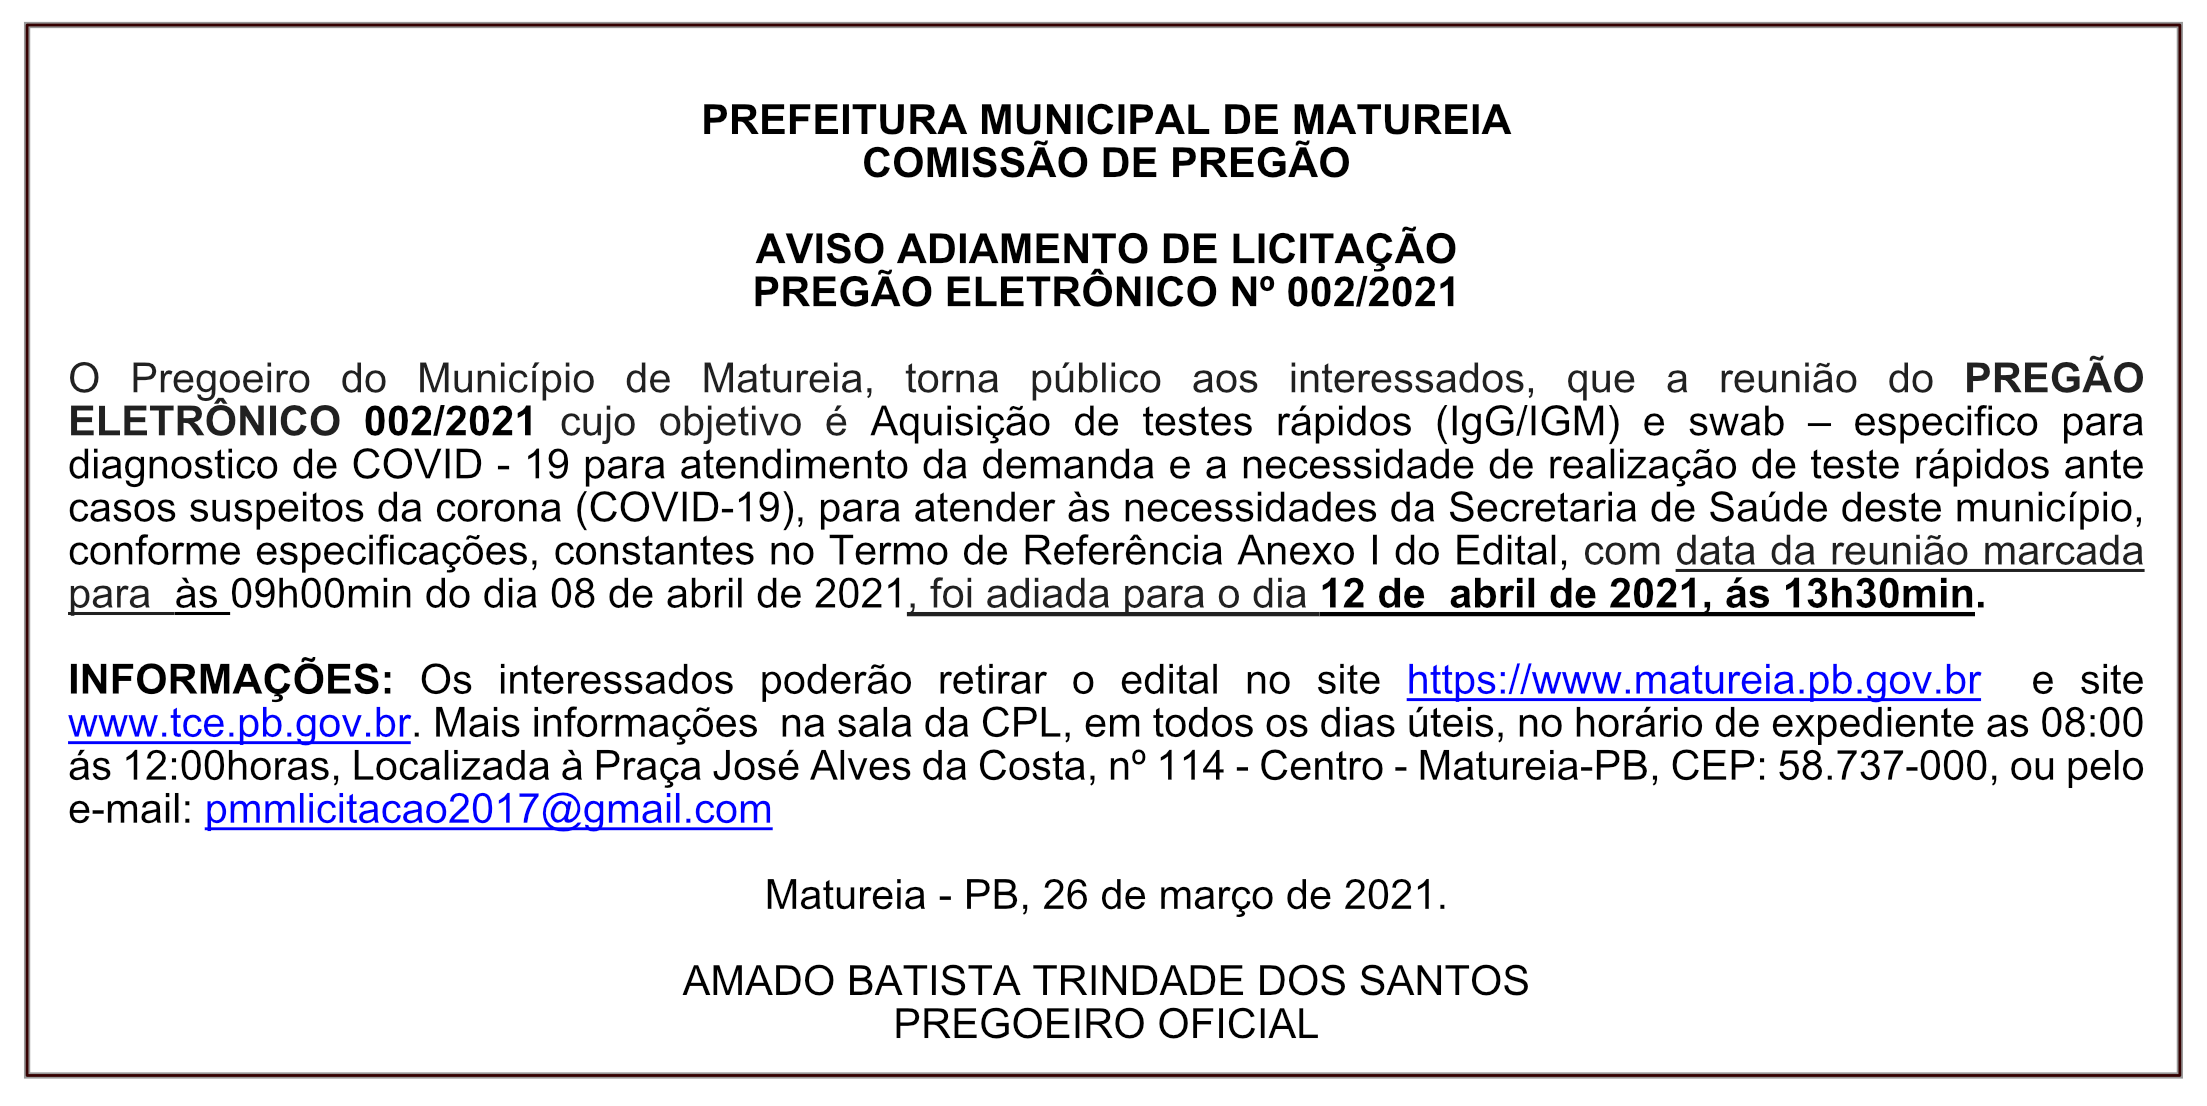 PREFEITURA MUNICIPAL DE MATUREIA – COMISSÃO DE PREGÃO – AVISO ADIAMENTO DE LICITAÇÃO – PREGÃO ELETRÔNICO Nº 002/2021